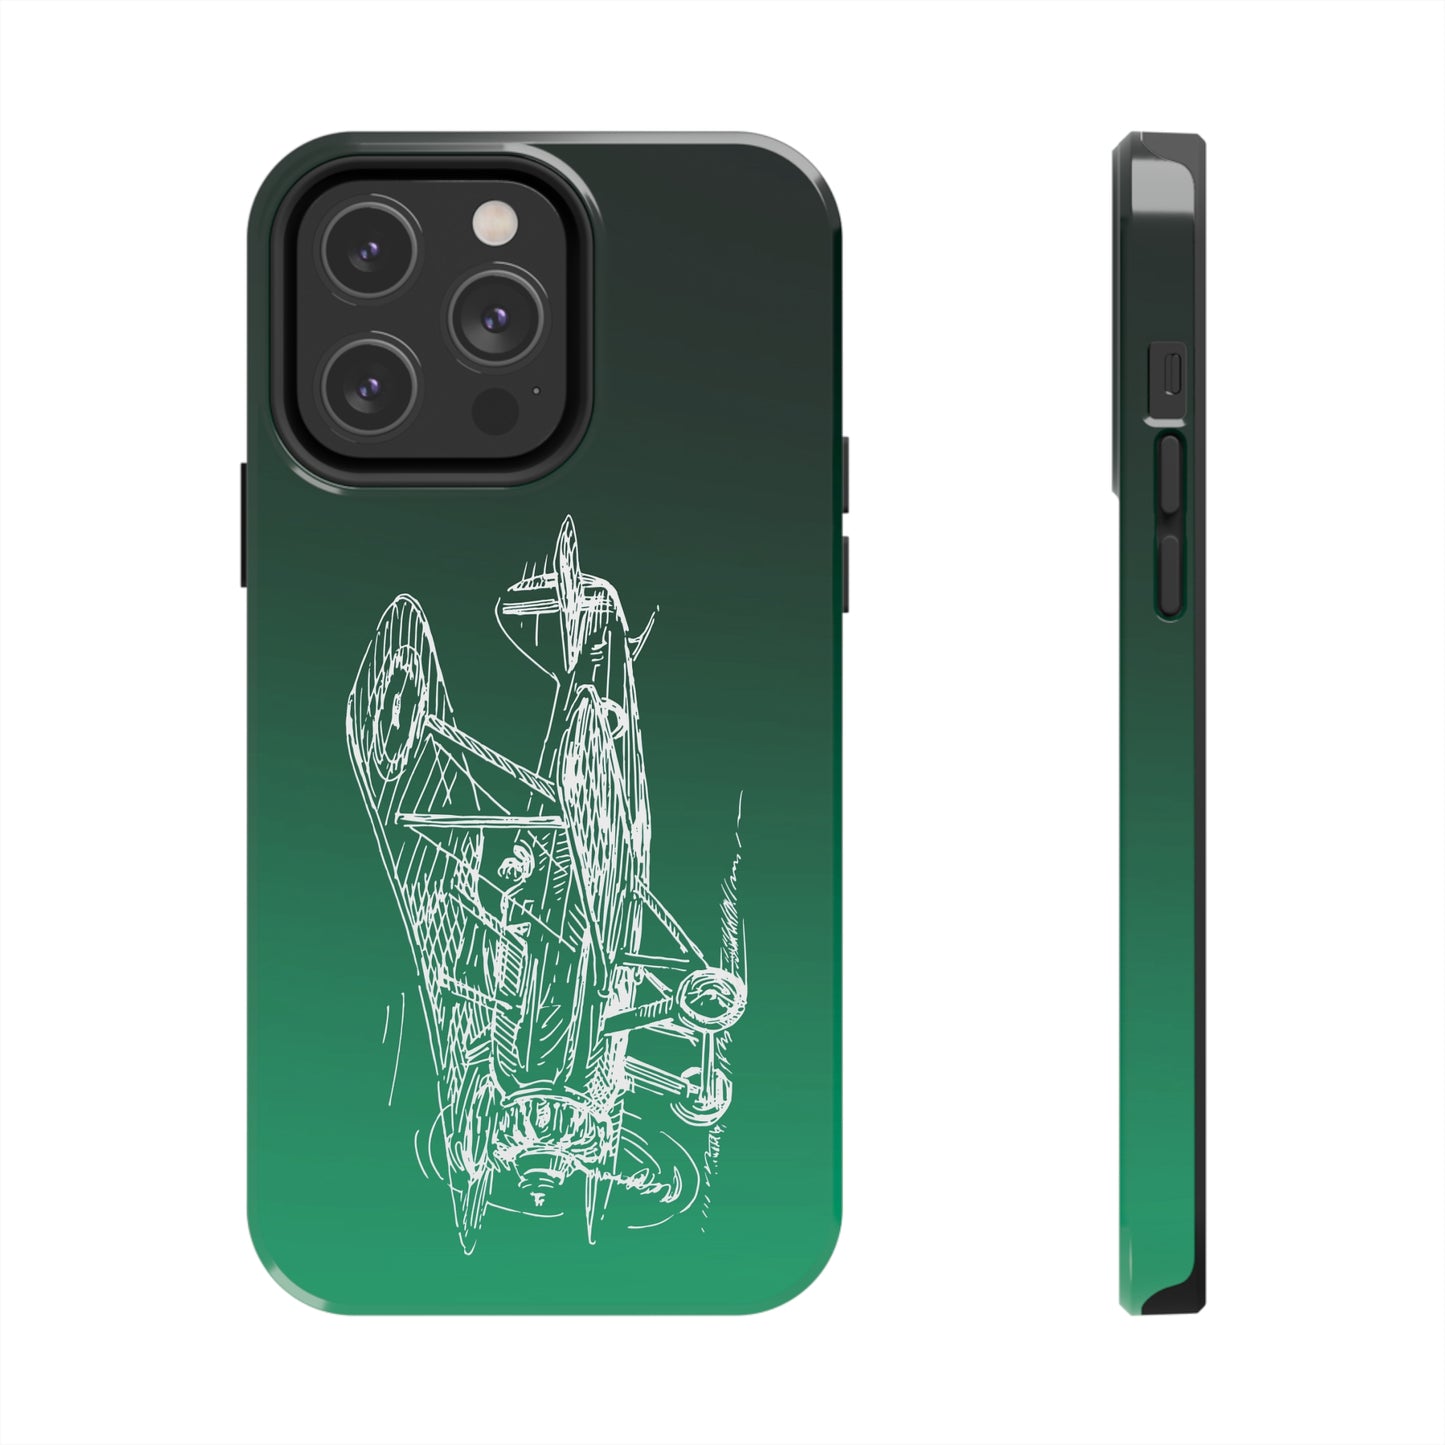 Aero 2 (green) tough phone cases